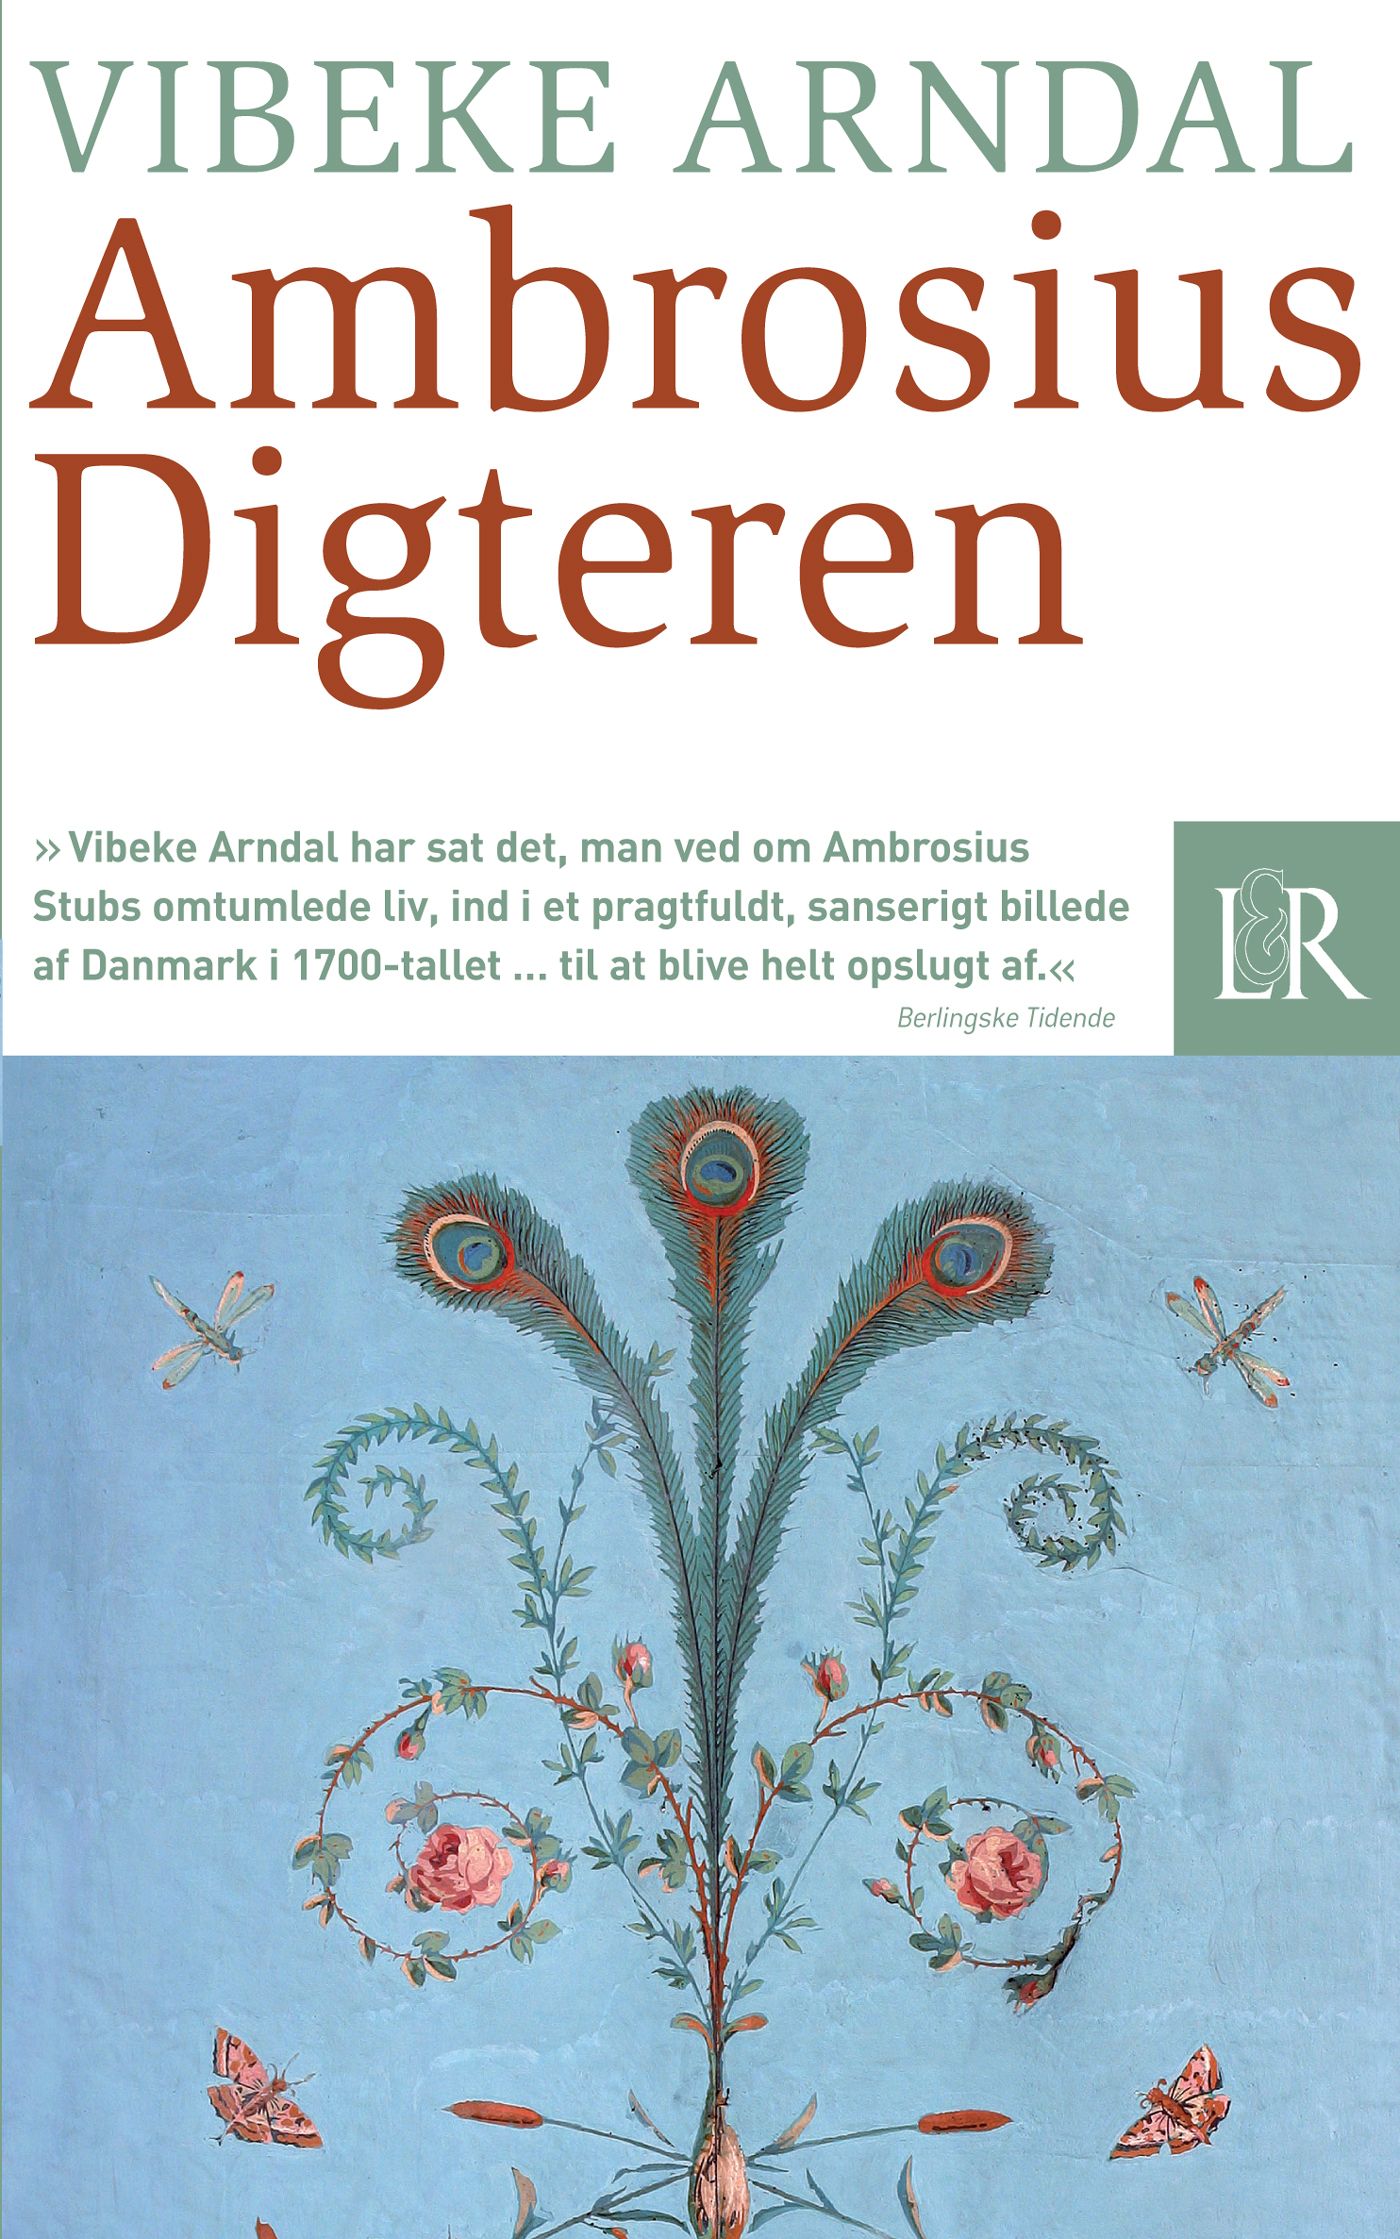 Ambrosius Digteren, eBook by Vibeke Arndal